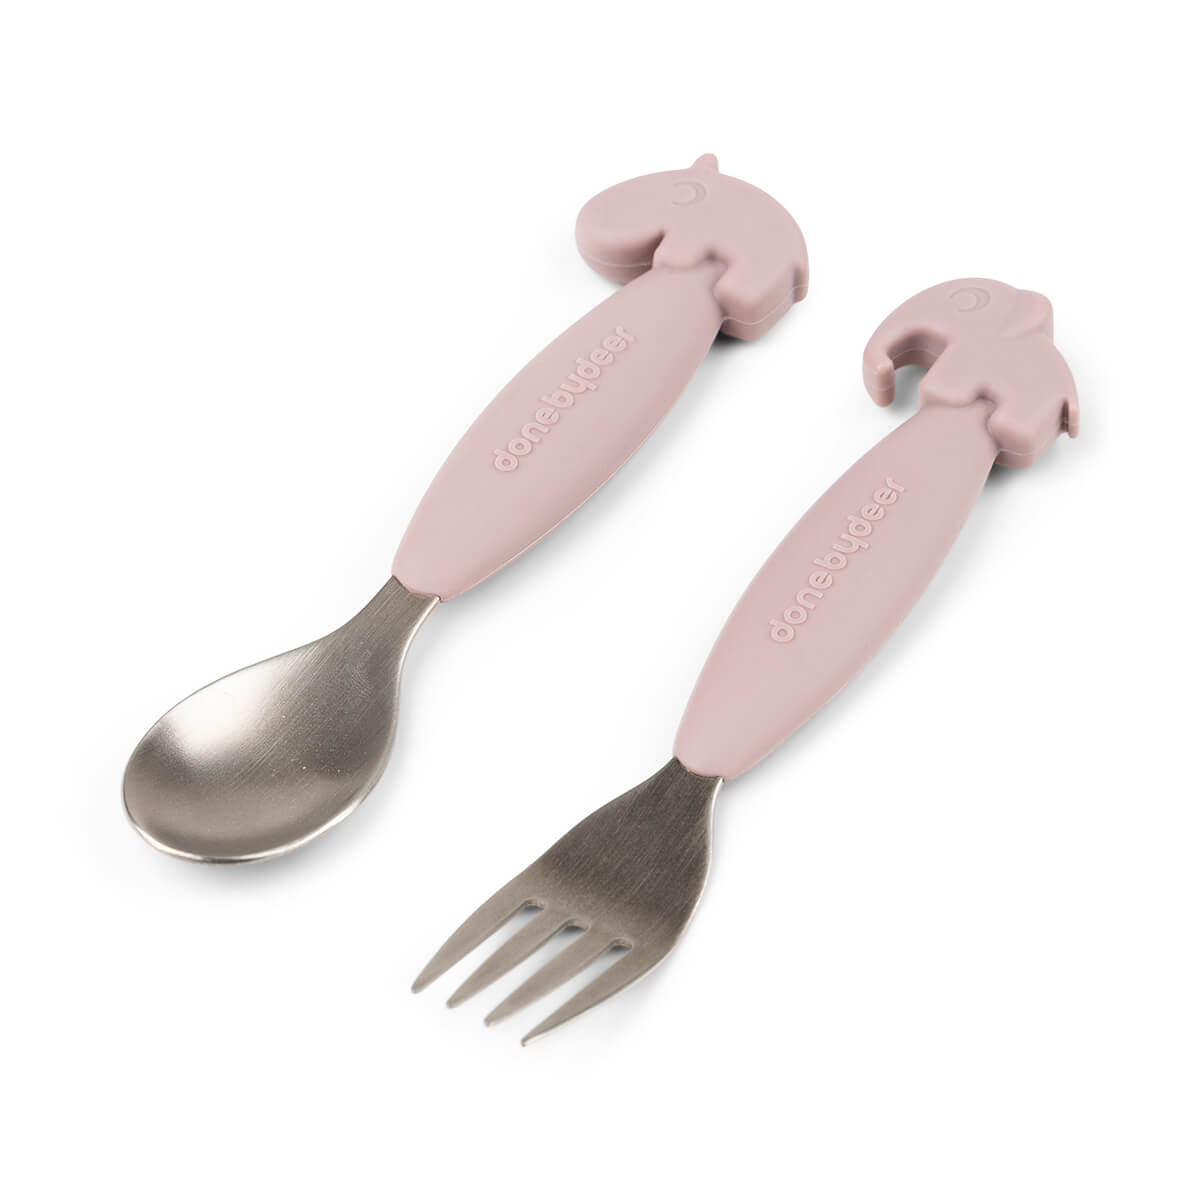 Easy-grip spoon and fork set - Deer friends - Powder